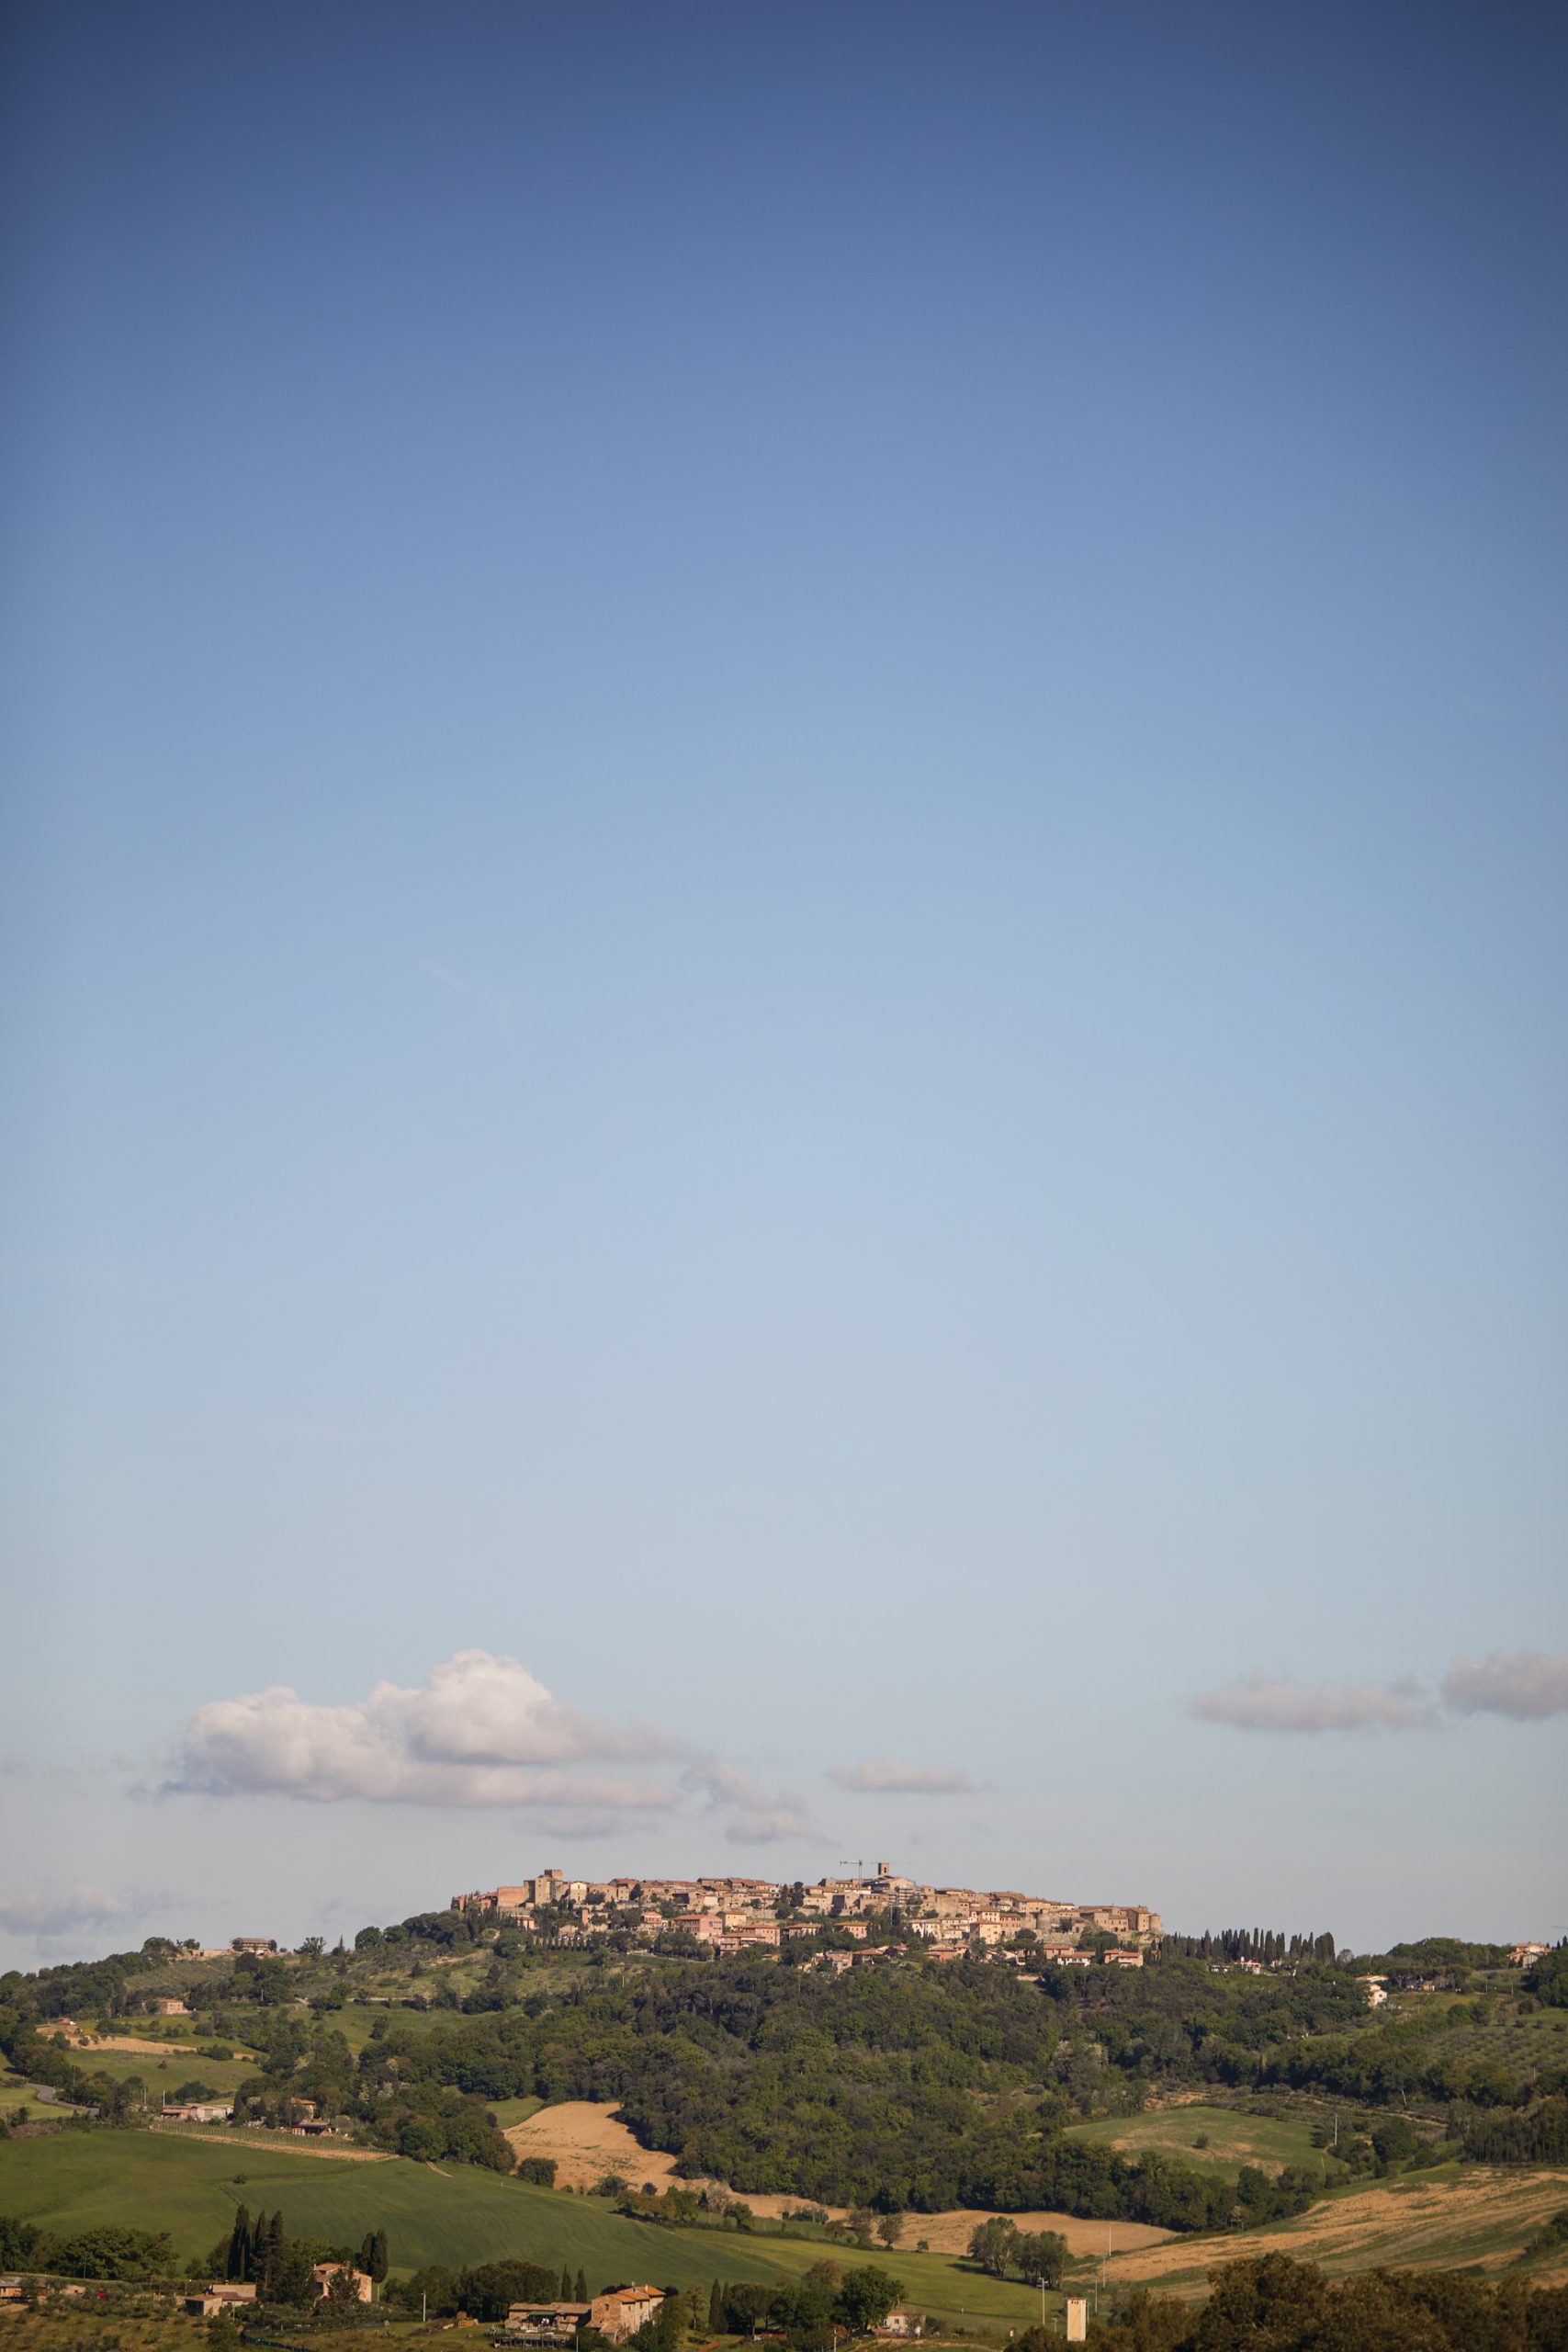 Castello di Casole, A Belmond Hotel, Tuscany – Casole d’Elsa, Italy – View